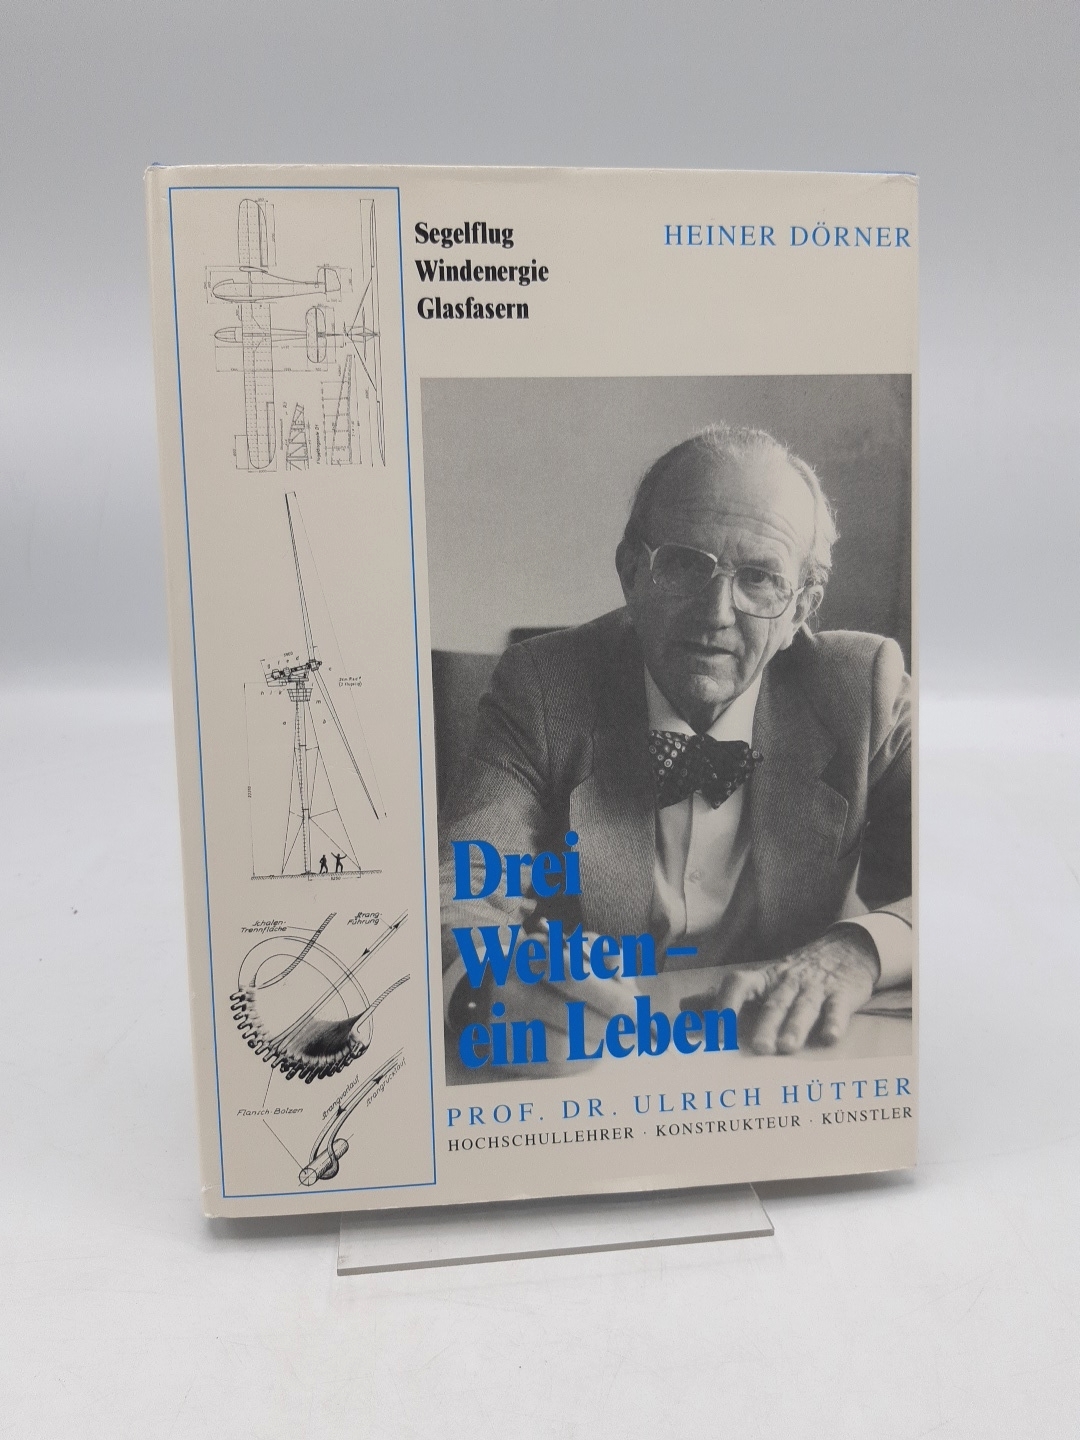 Drei Welten - ein Leben Prof. Dr. Ulrich Hütter, Hochschullehrer - Konstrukteur - Künstler - Dörner, Heiner